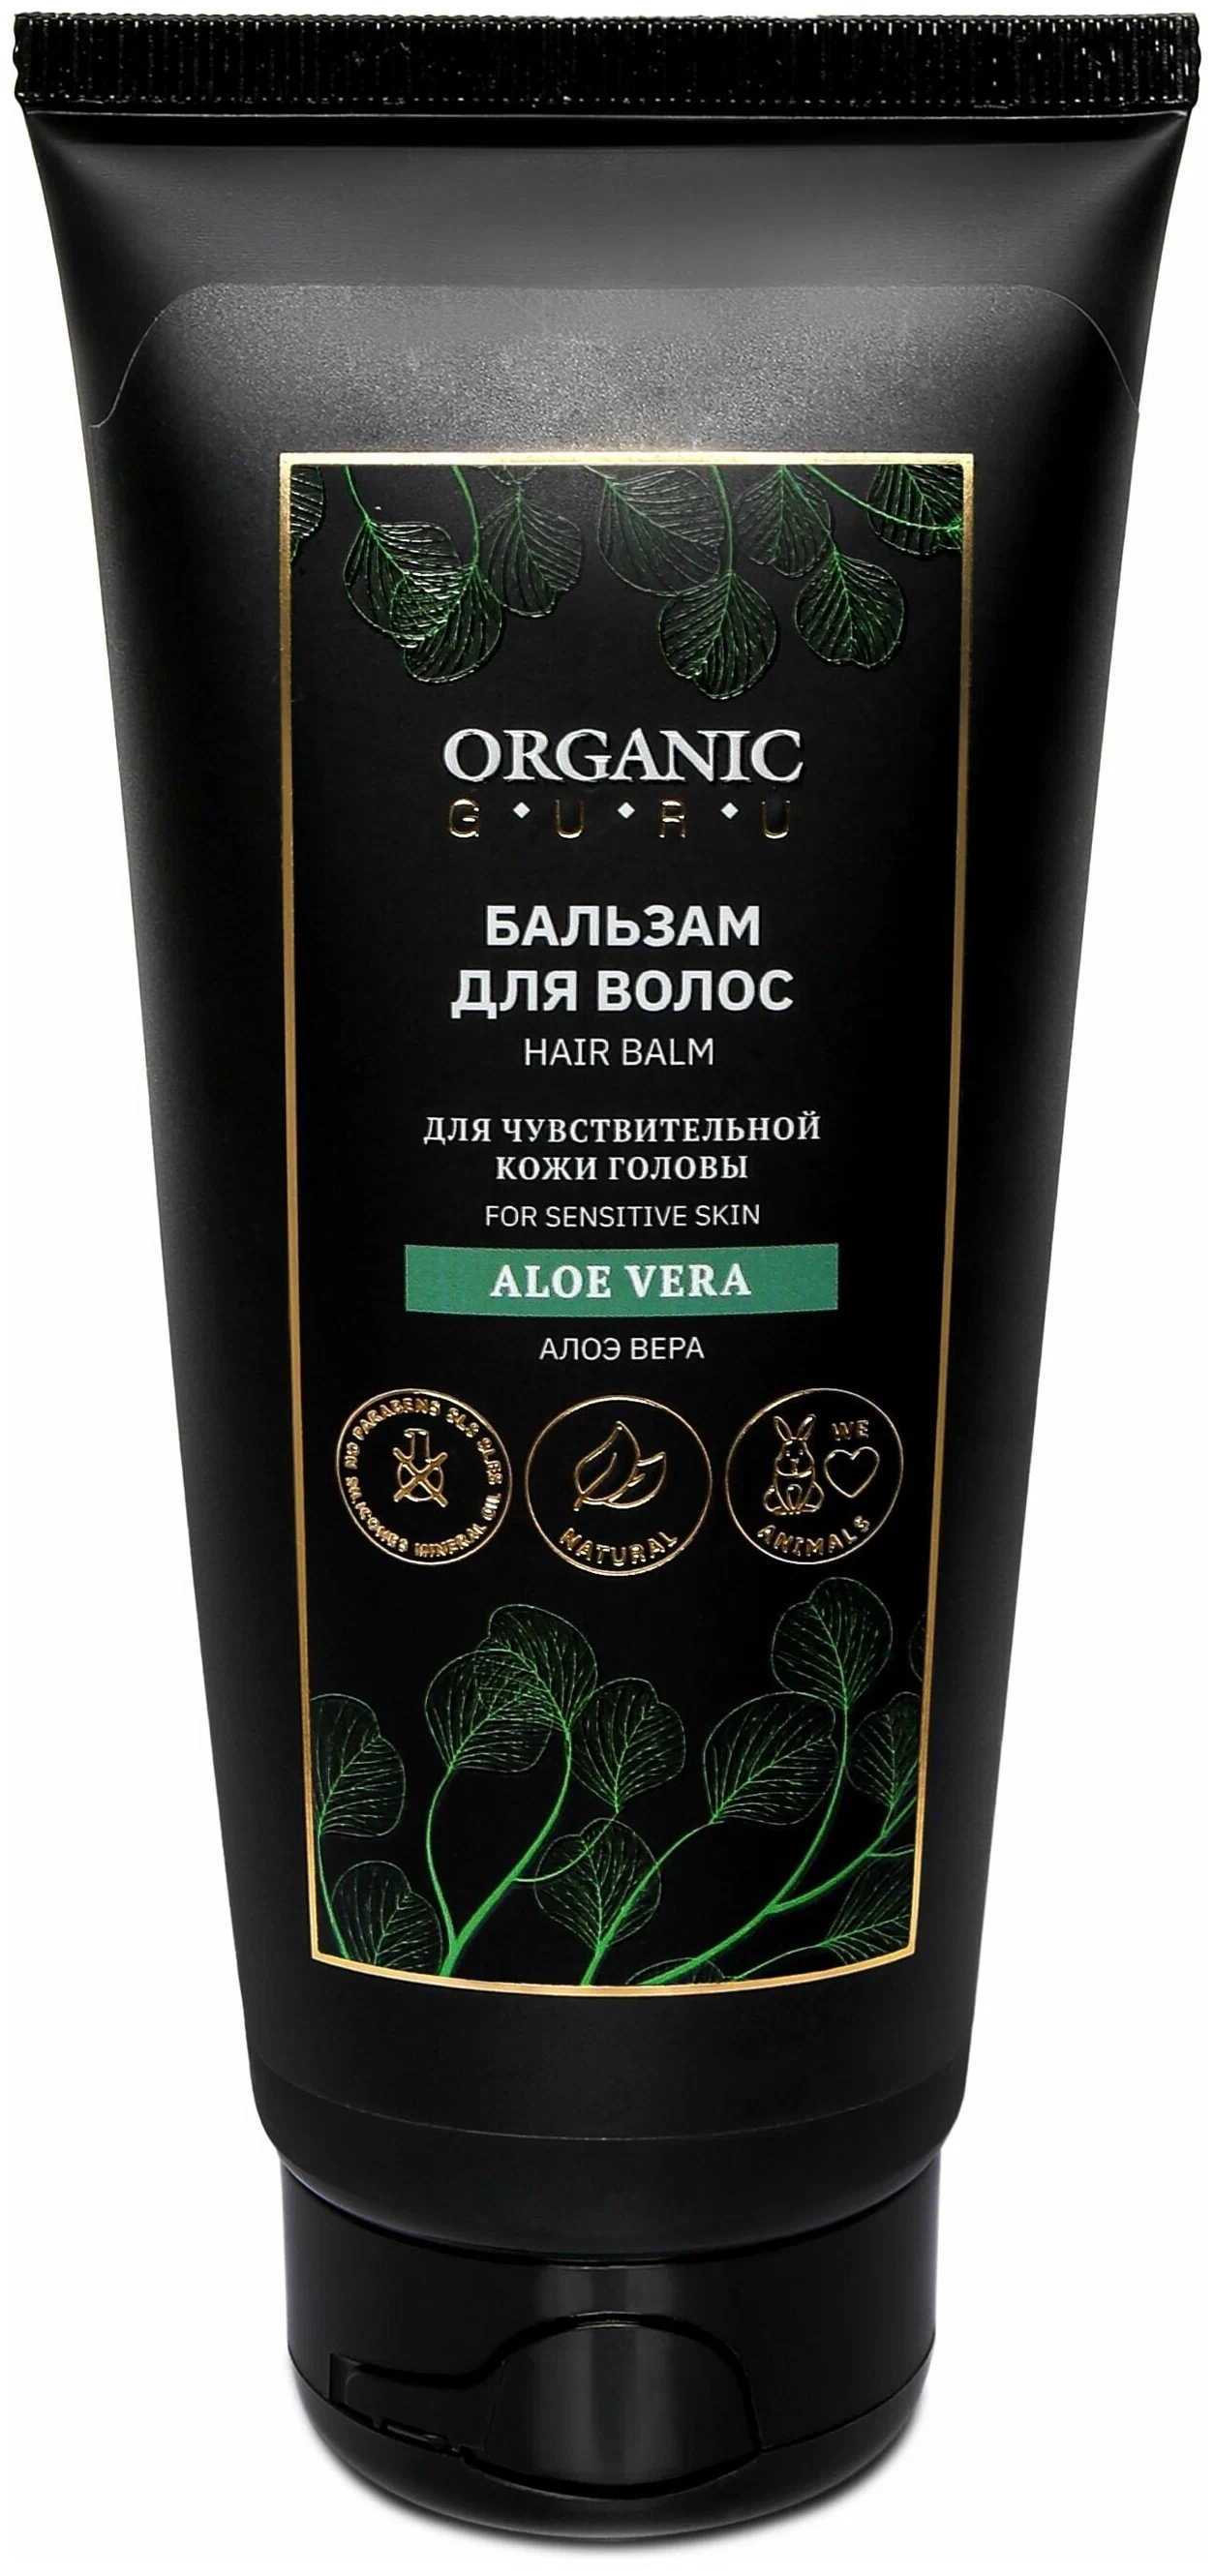 Бальзам-ополаскиватель для волос Organic Guru Aloe Vera для чувствительной кожи, 200 мл кладовая красоты бальзам для волос с экстрактом крапивы 500